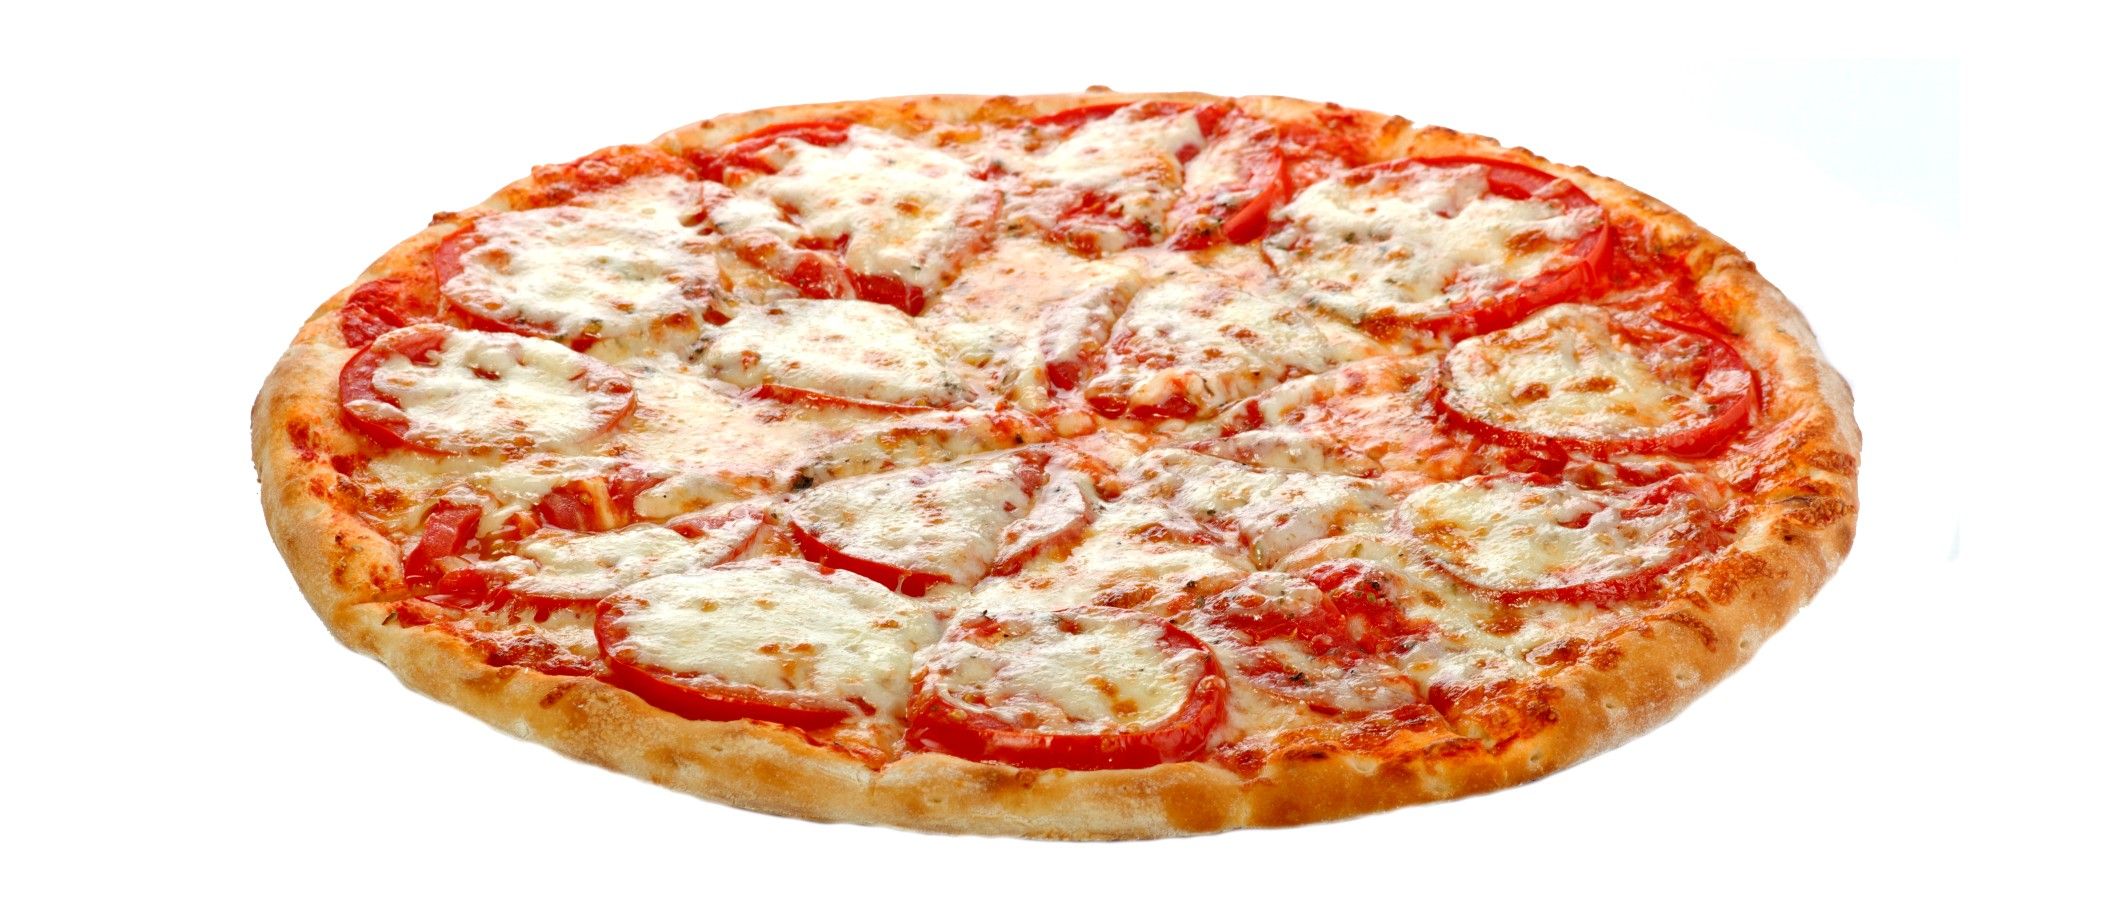 цена на пиццу маргарита фото 33